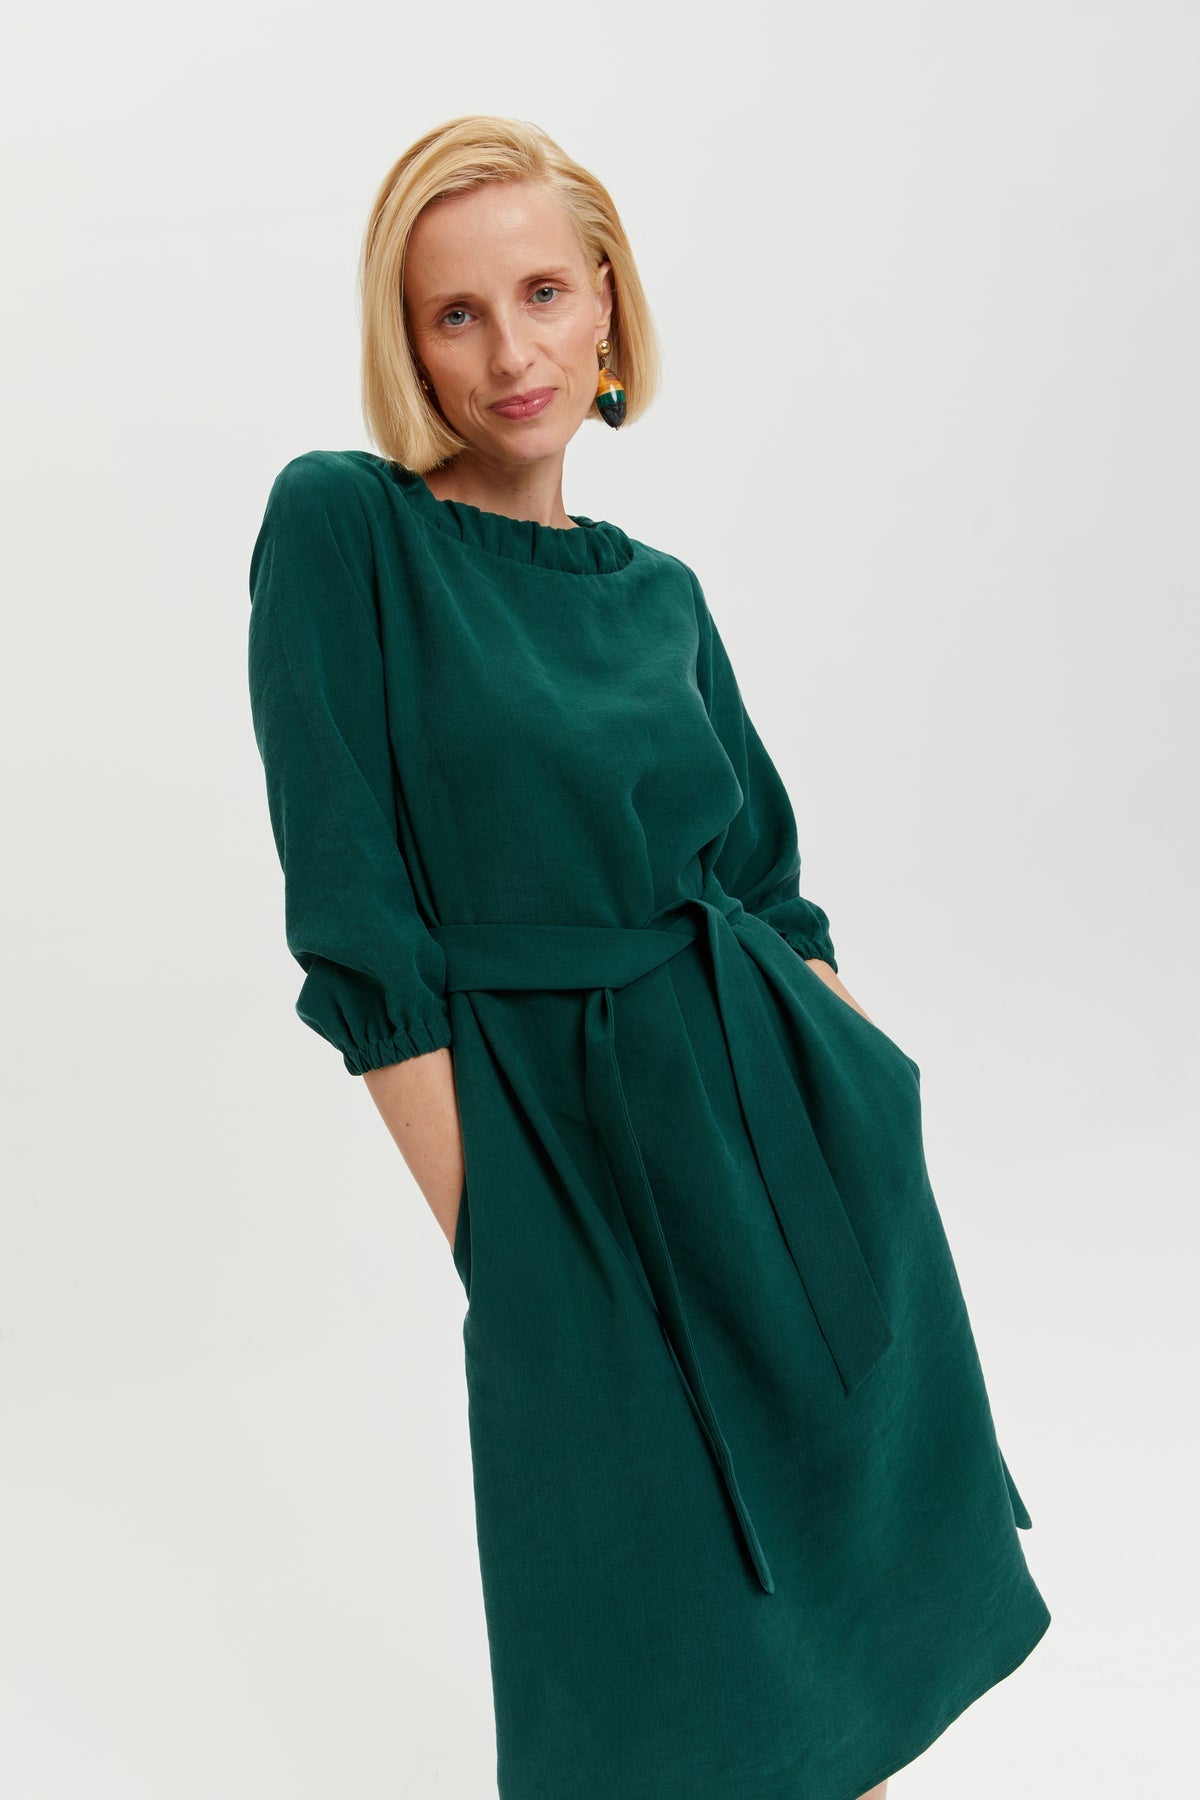 Celine | Elegantes Gürtelkleid mit Dekolleté-Element in Waldgrün von Ayani